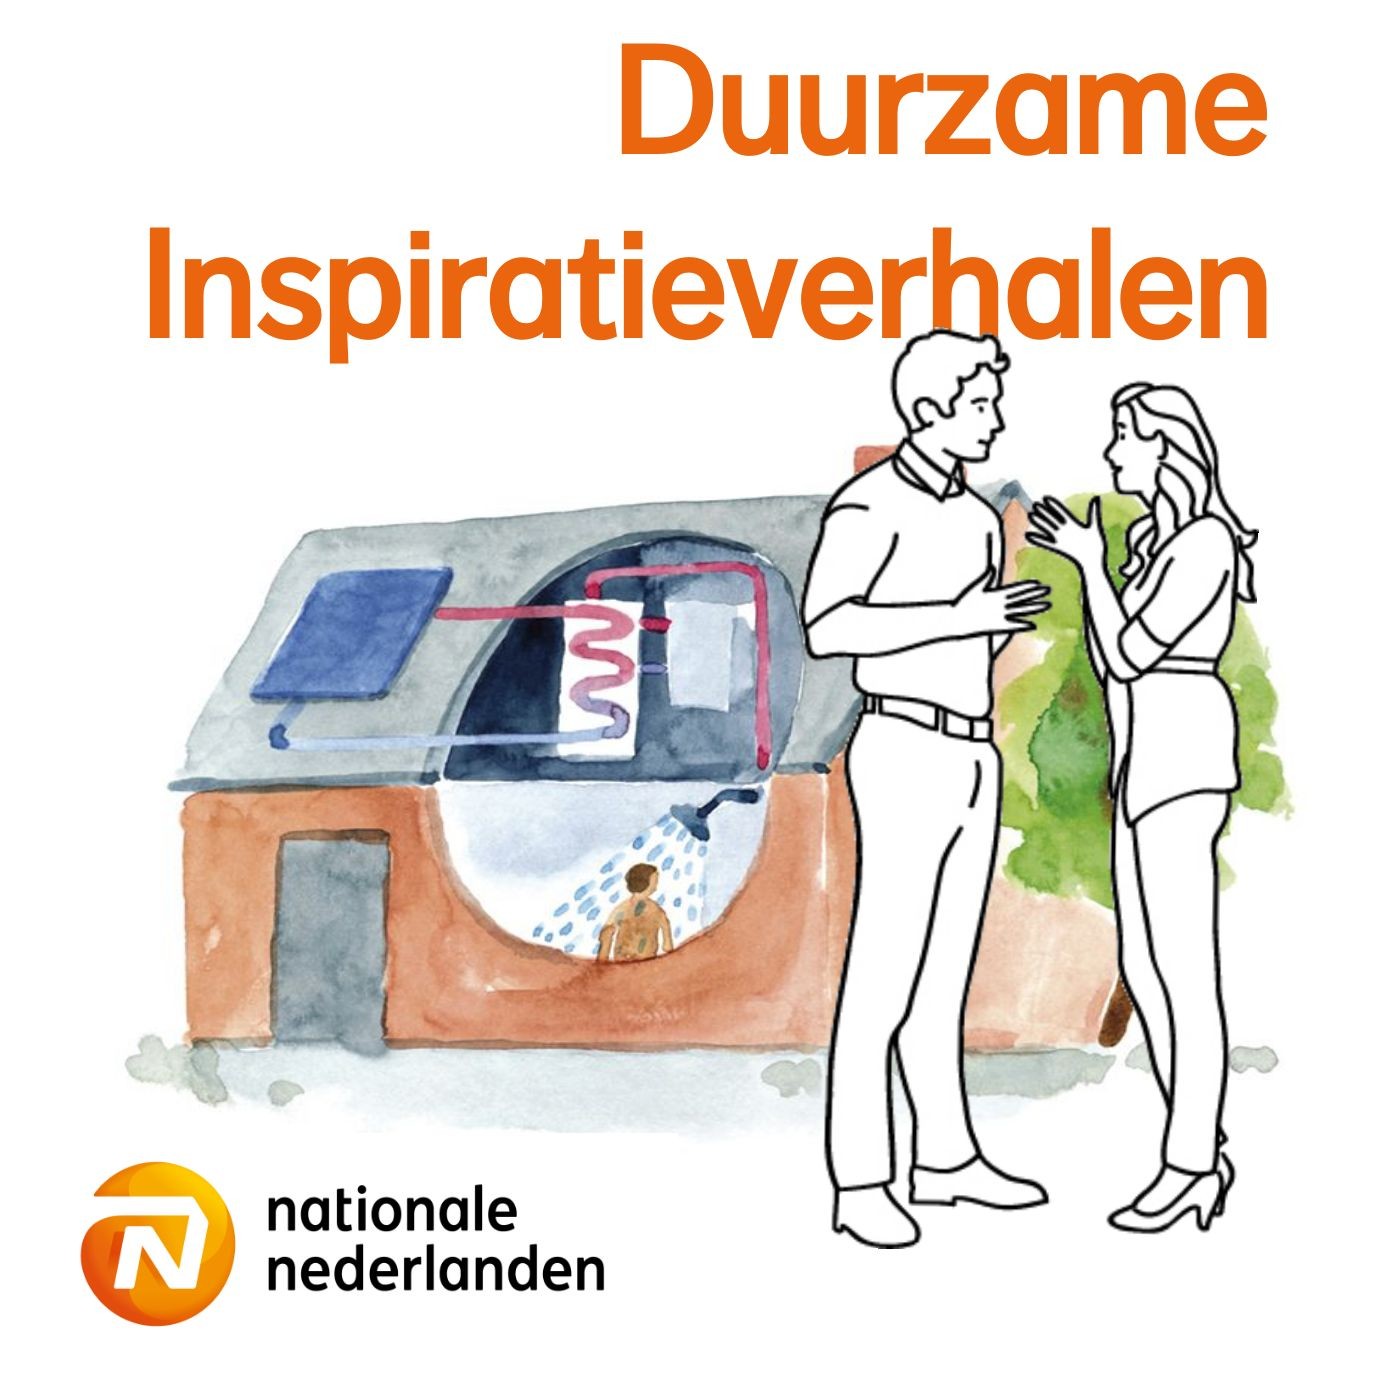 'Onze website maakt duurzame keuzes inzichtelijk' - Manon van der Poel (Hypotheekrente.nl Voorne-Putten)